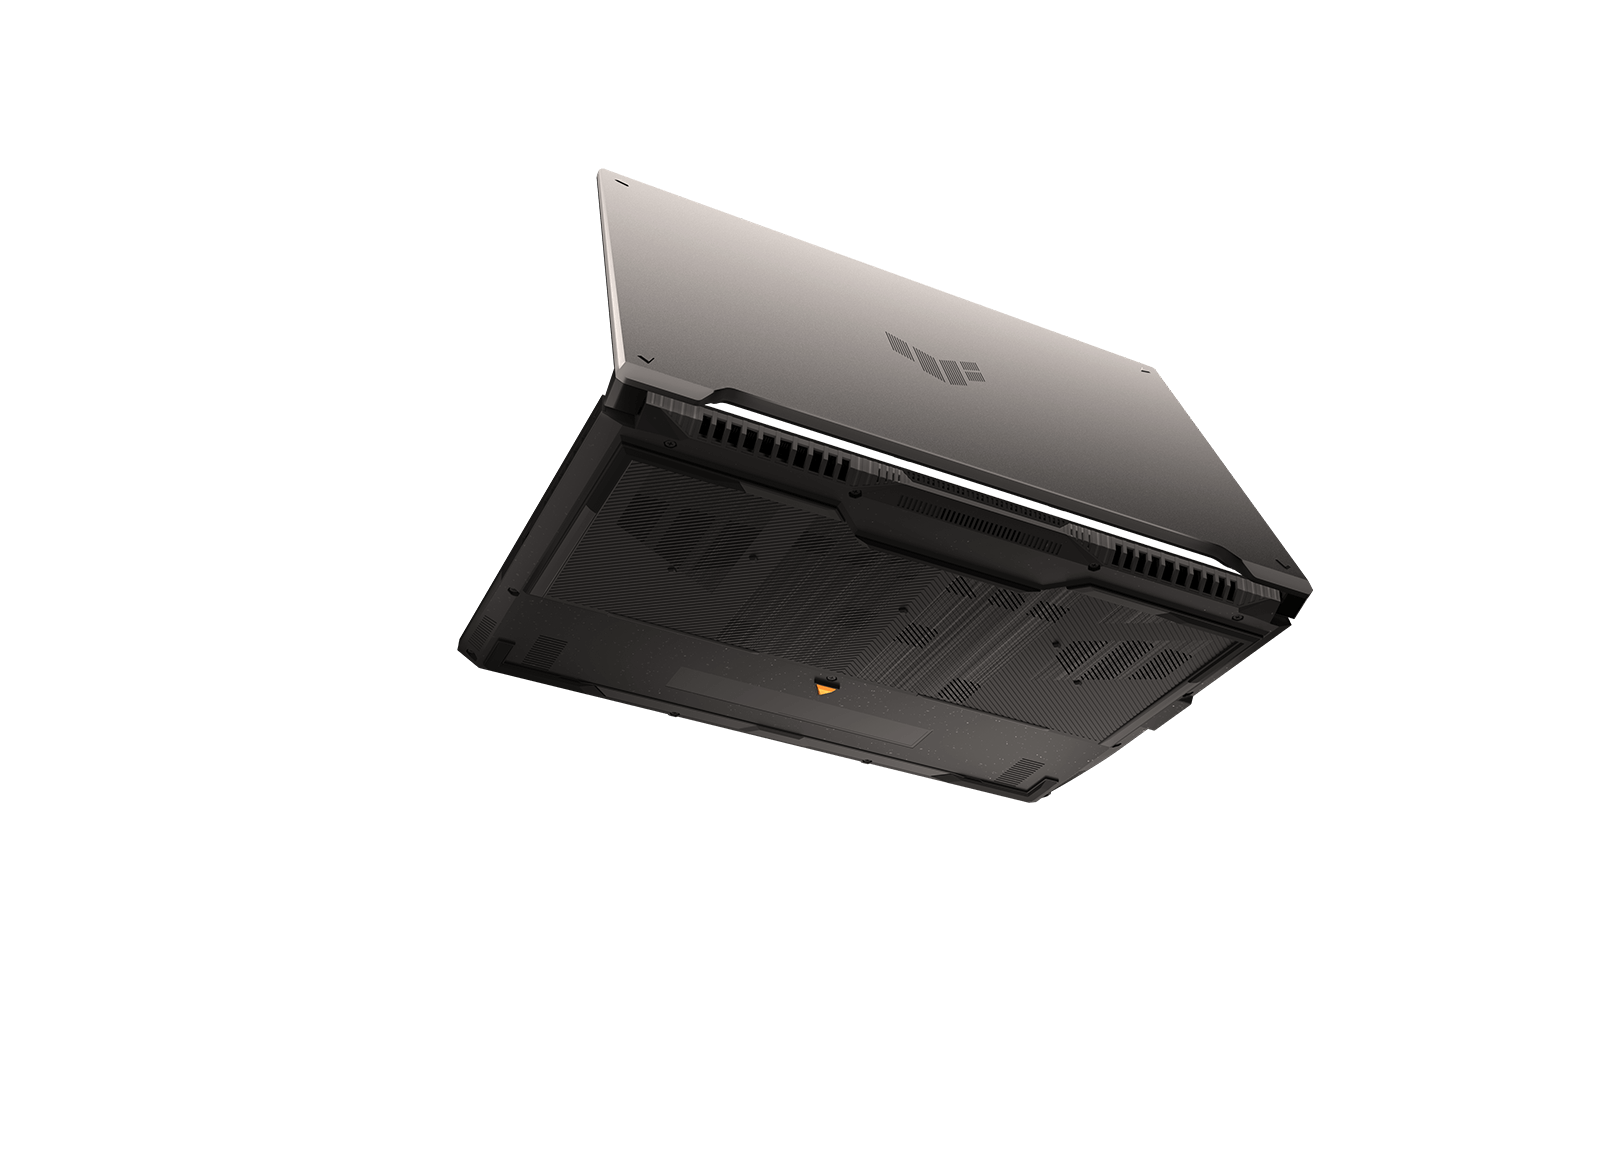 Ноутбук TUF Gaming A16 с полуоткрытой крышкой парит на черном фоне. Видны вентиляционные отверстия в его нижней панели. 